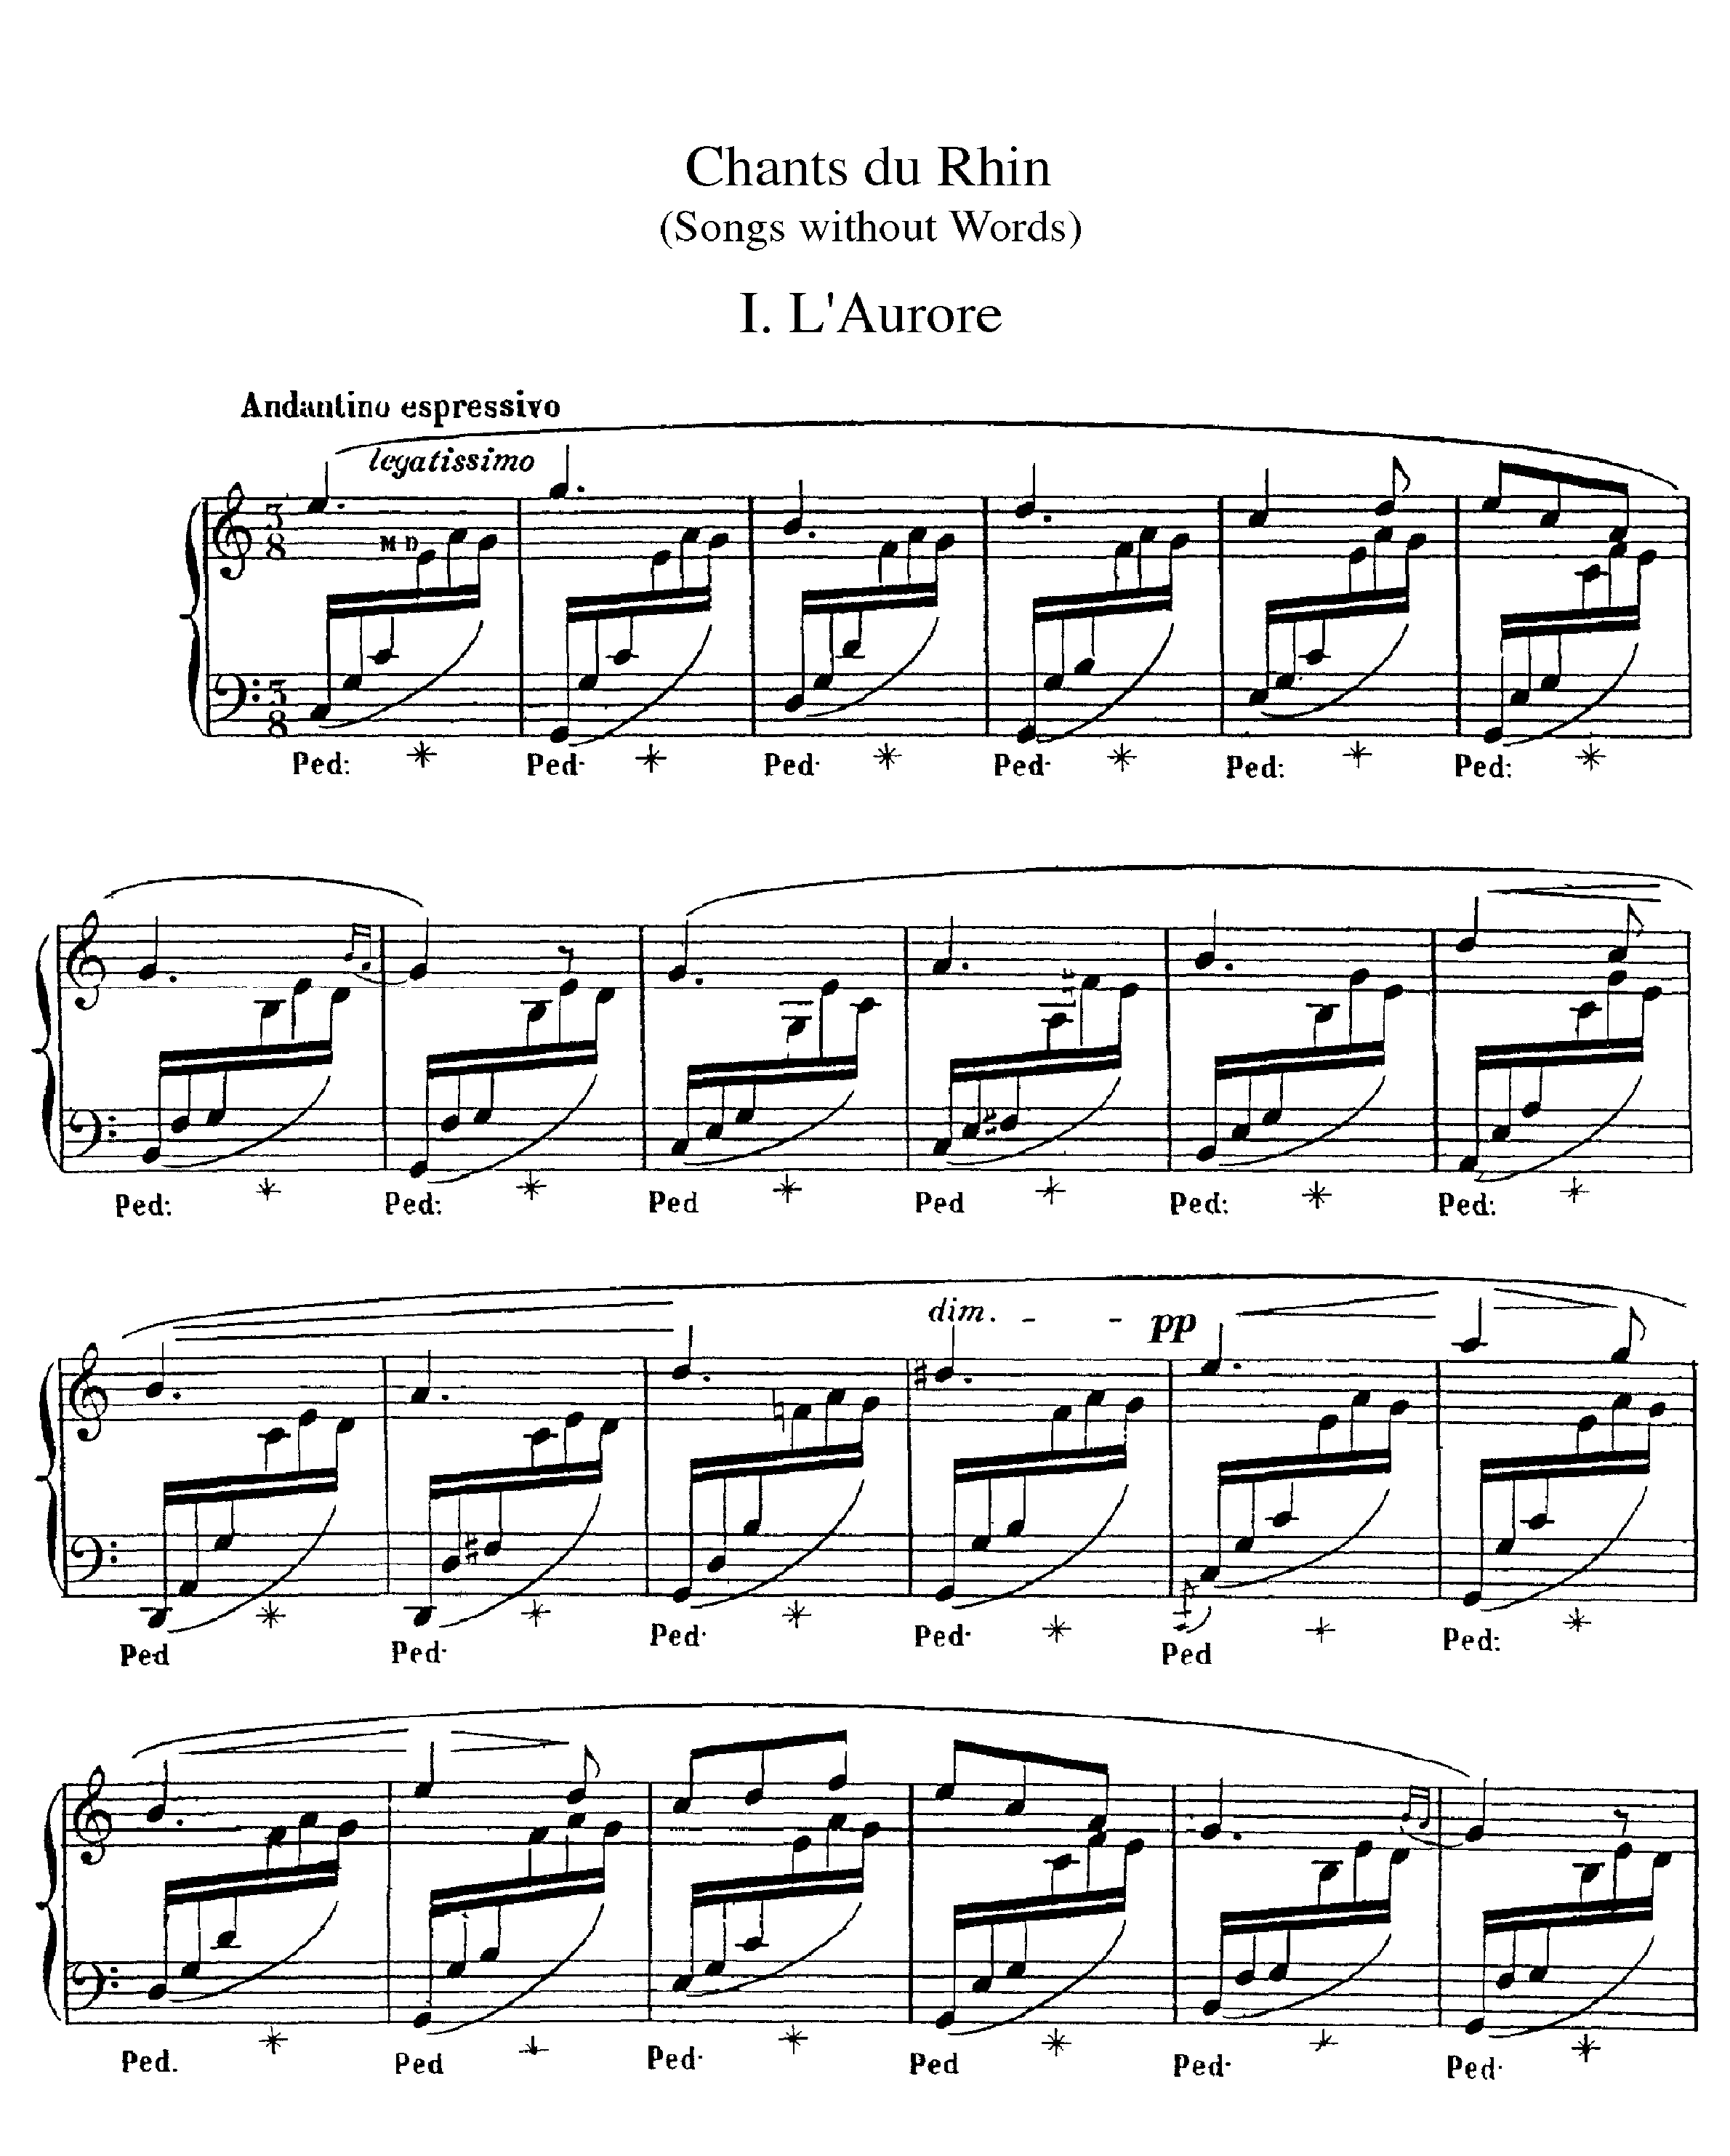 Chants du Rhinピアノ譜